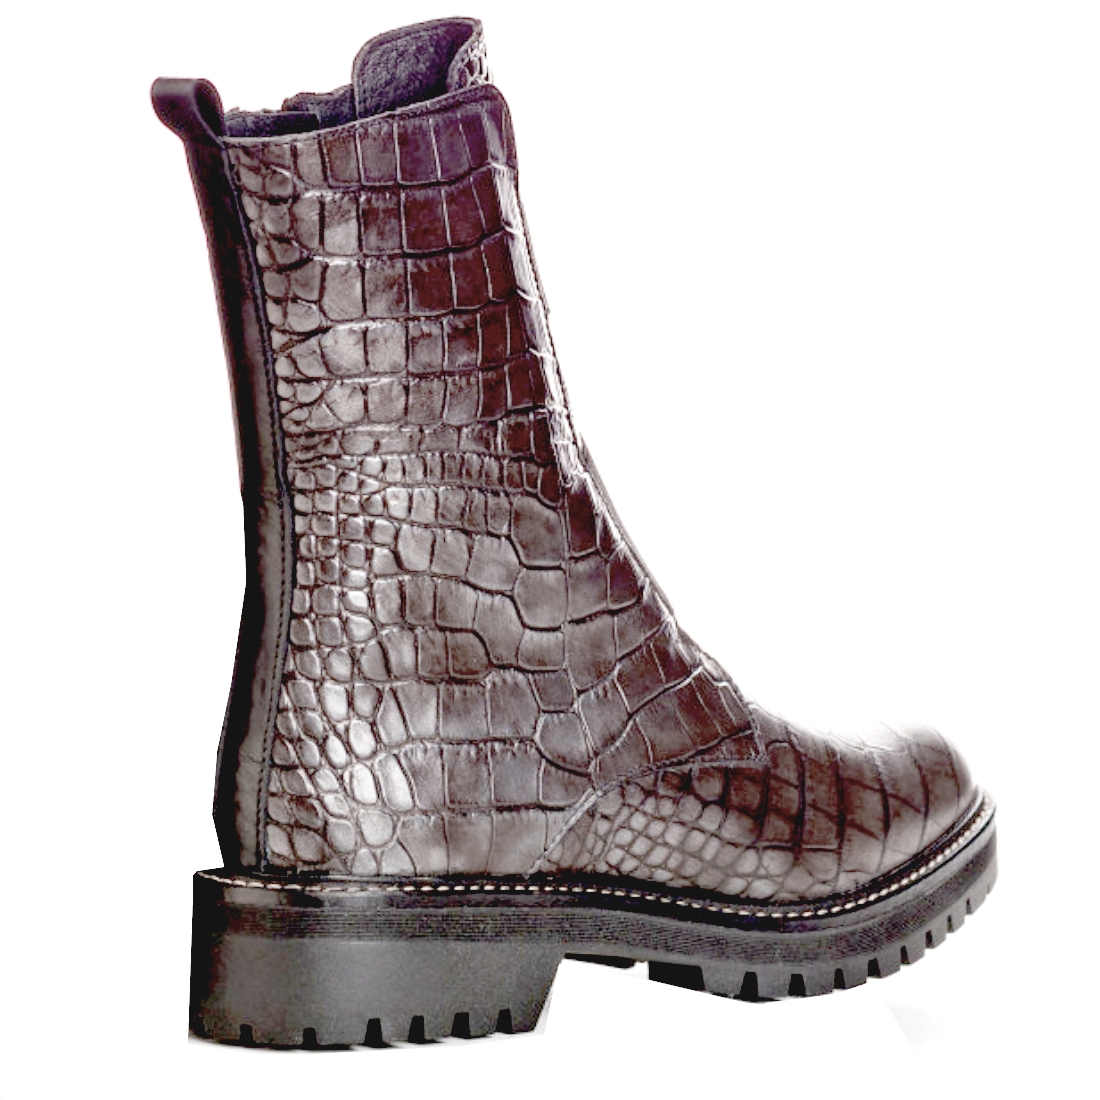 Boots Montantes Femme Gris de REQINS modèle Dusky-Alligator